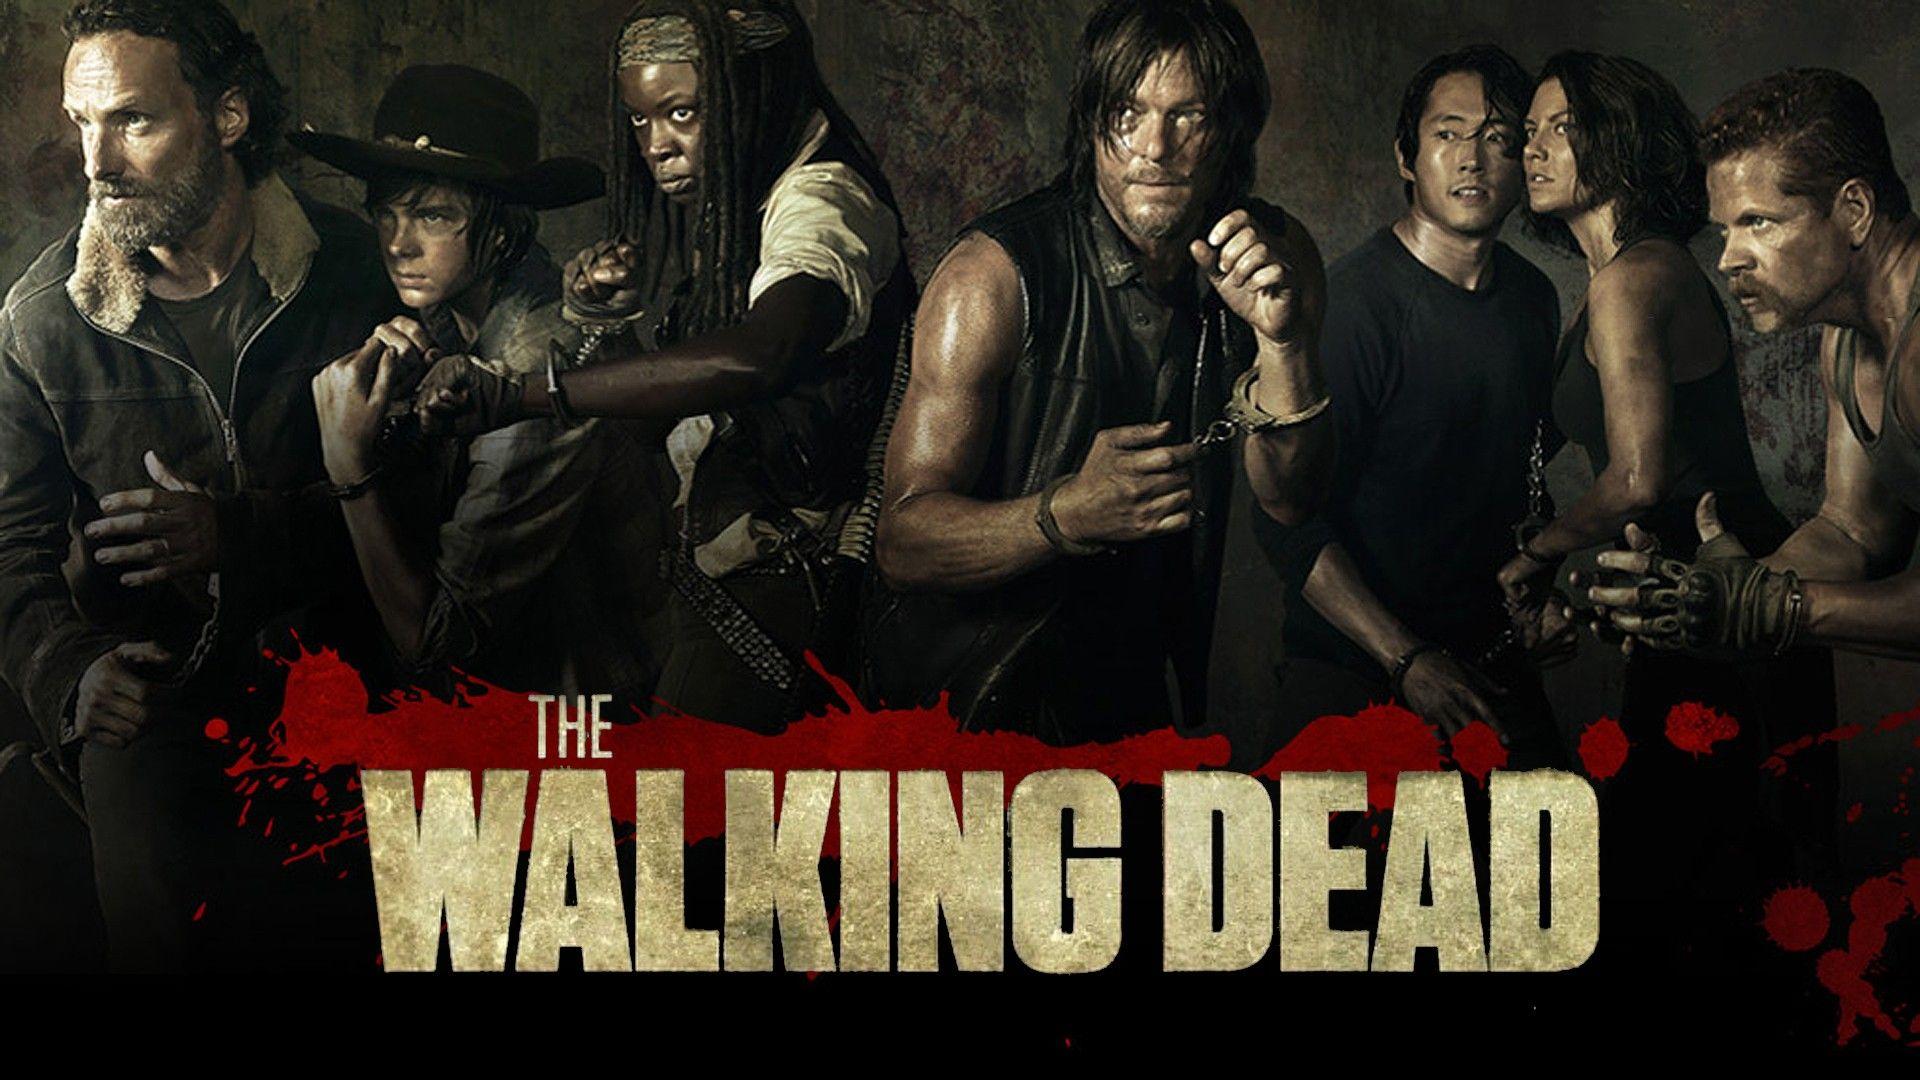 The Walking Dead' Season 5, Episode 8